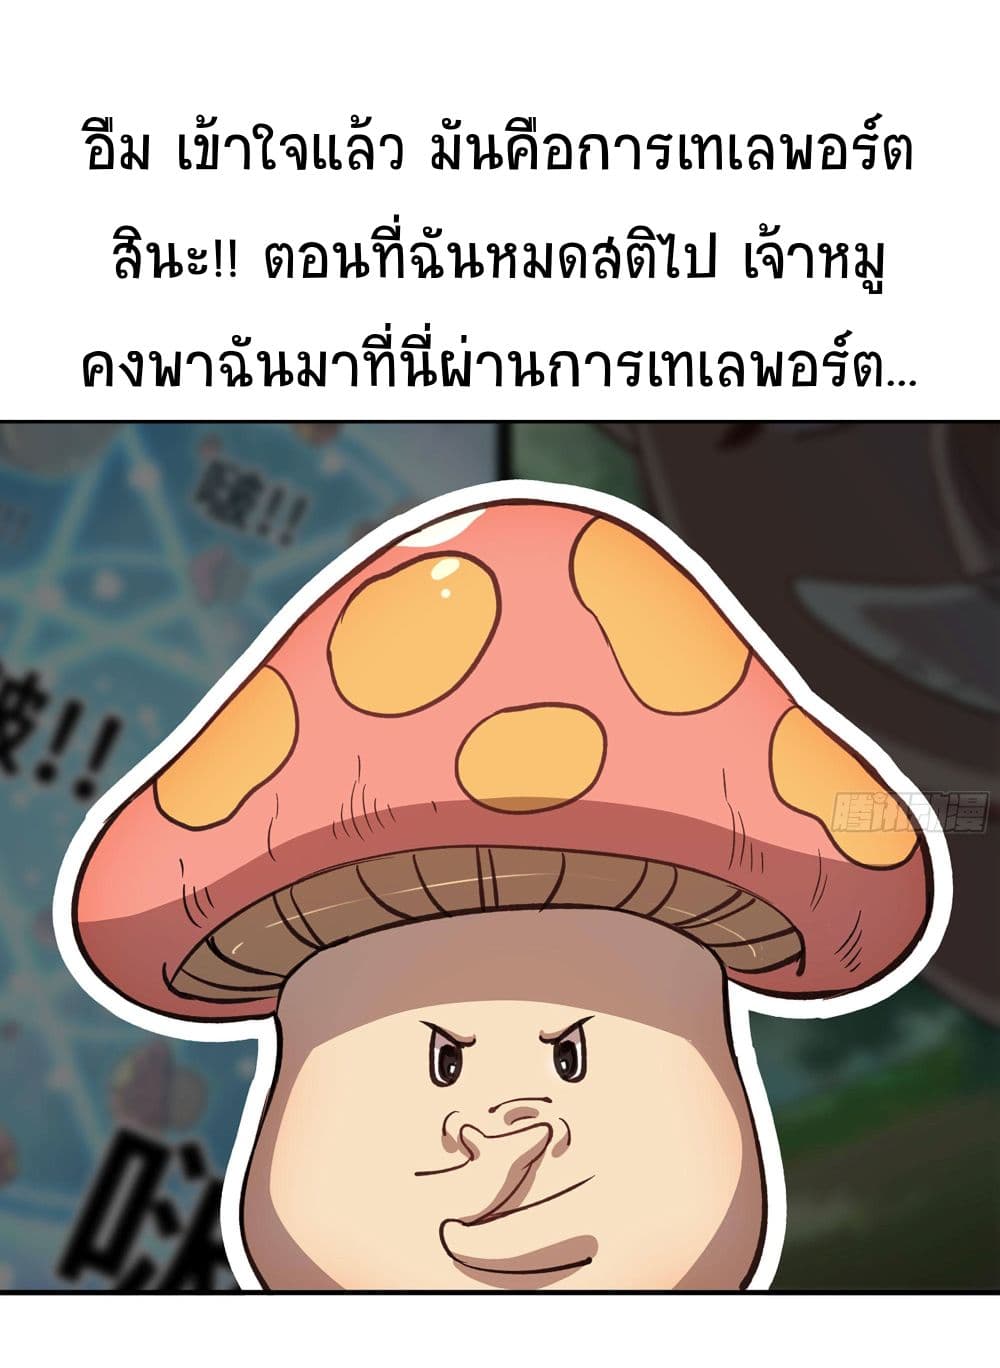 Mushroom Brave12 (8)